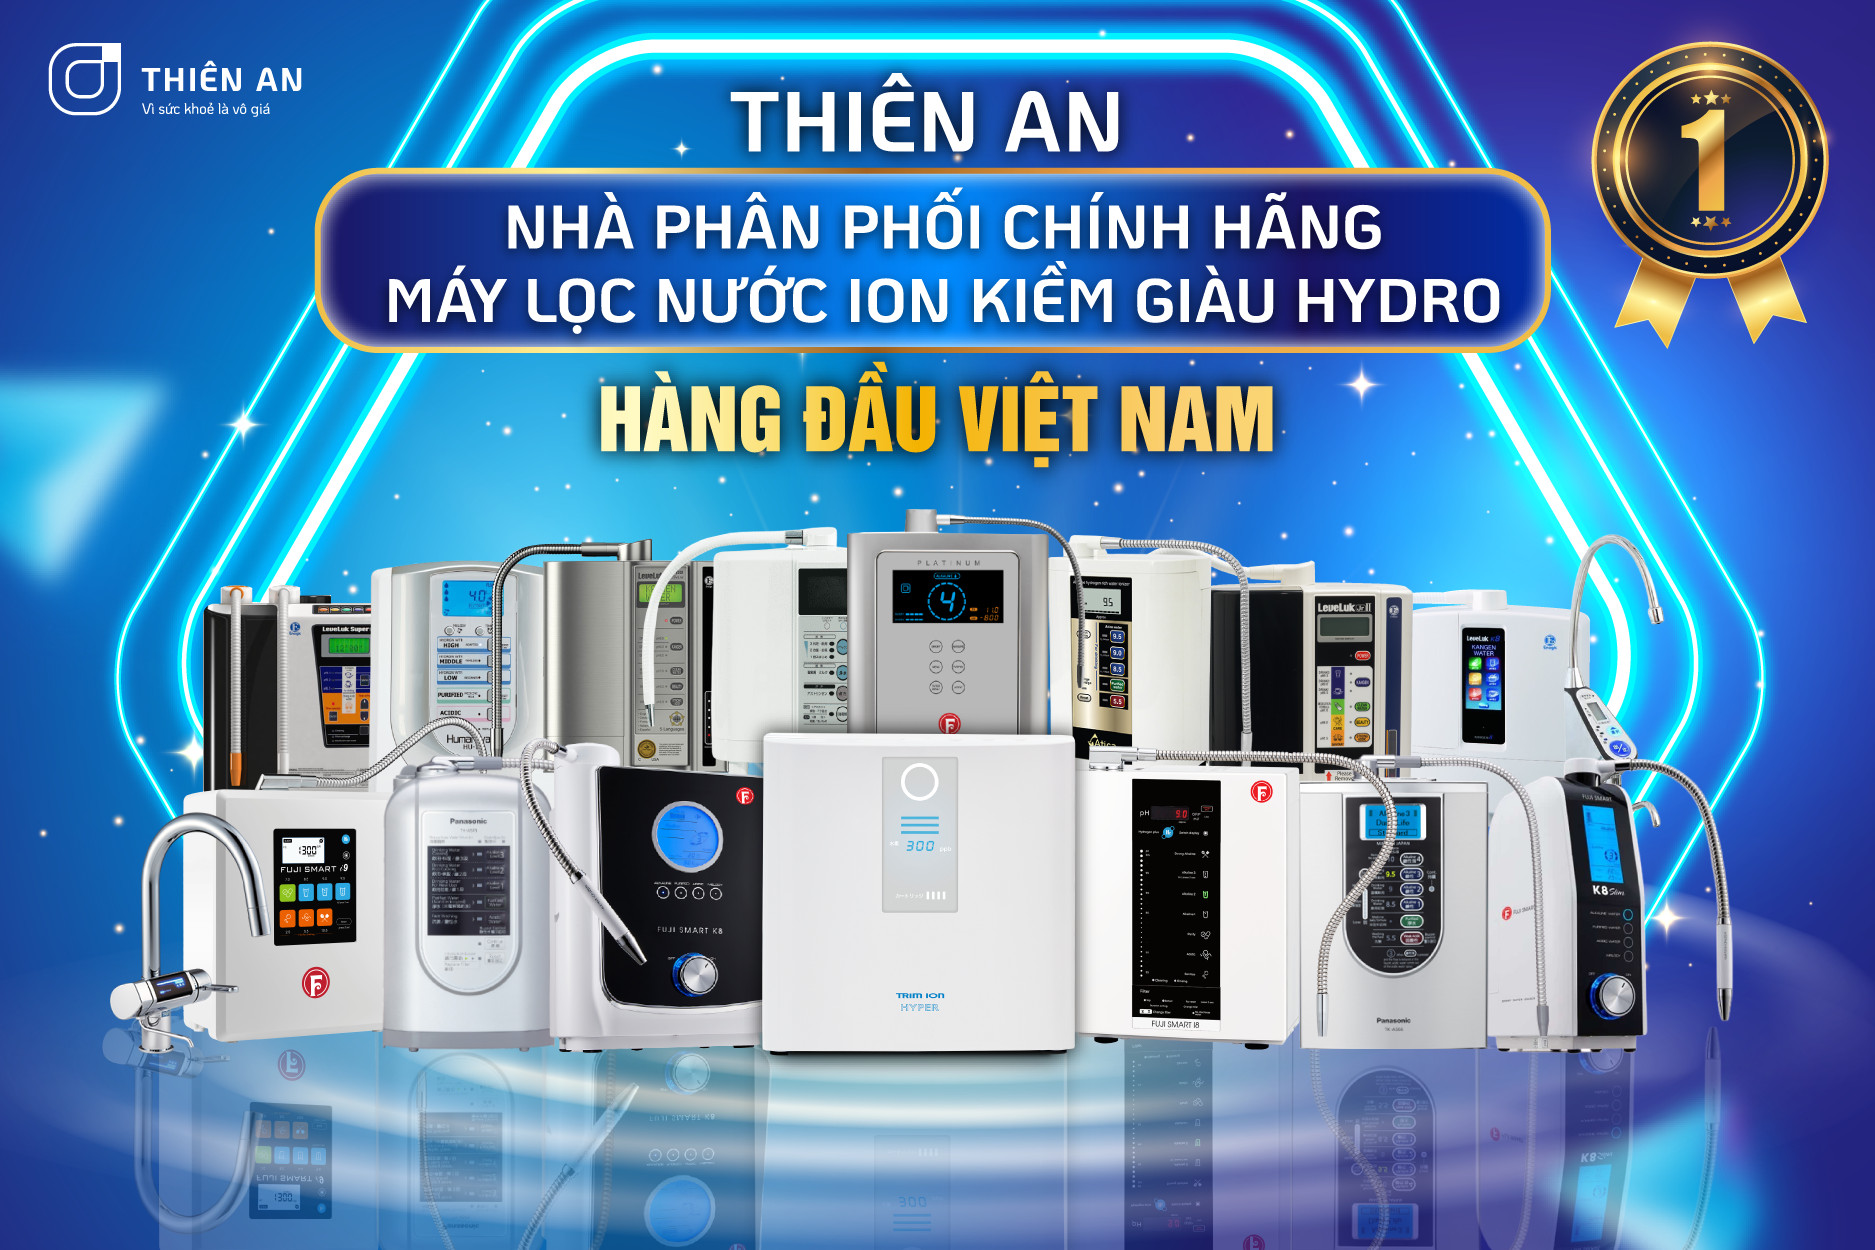 Thiên An là địa chỉ bán máy lọc nước ion kiềm chính hãng tại Việt Nam